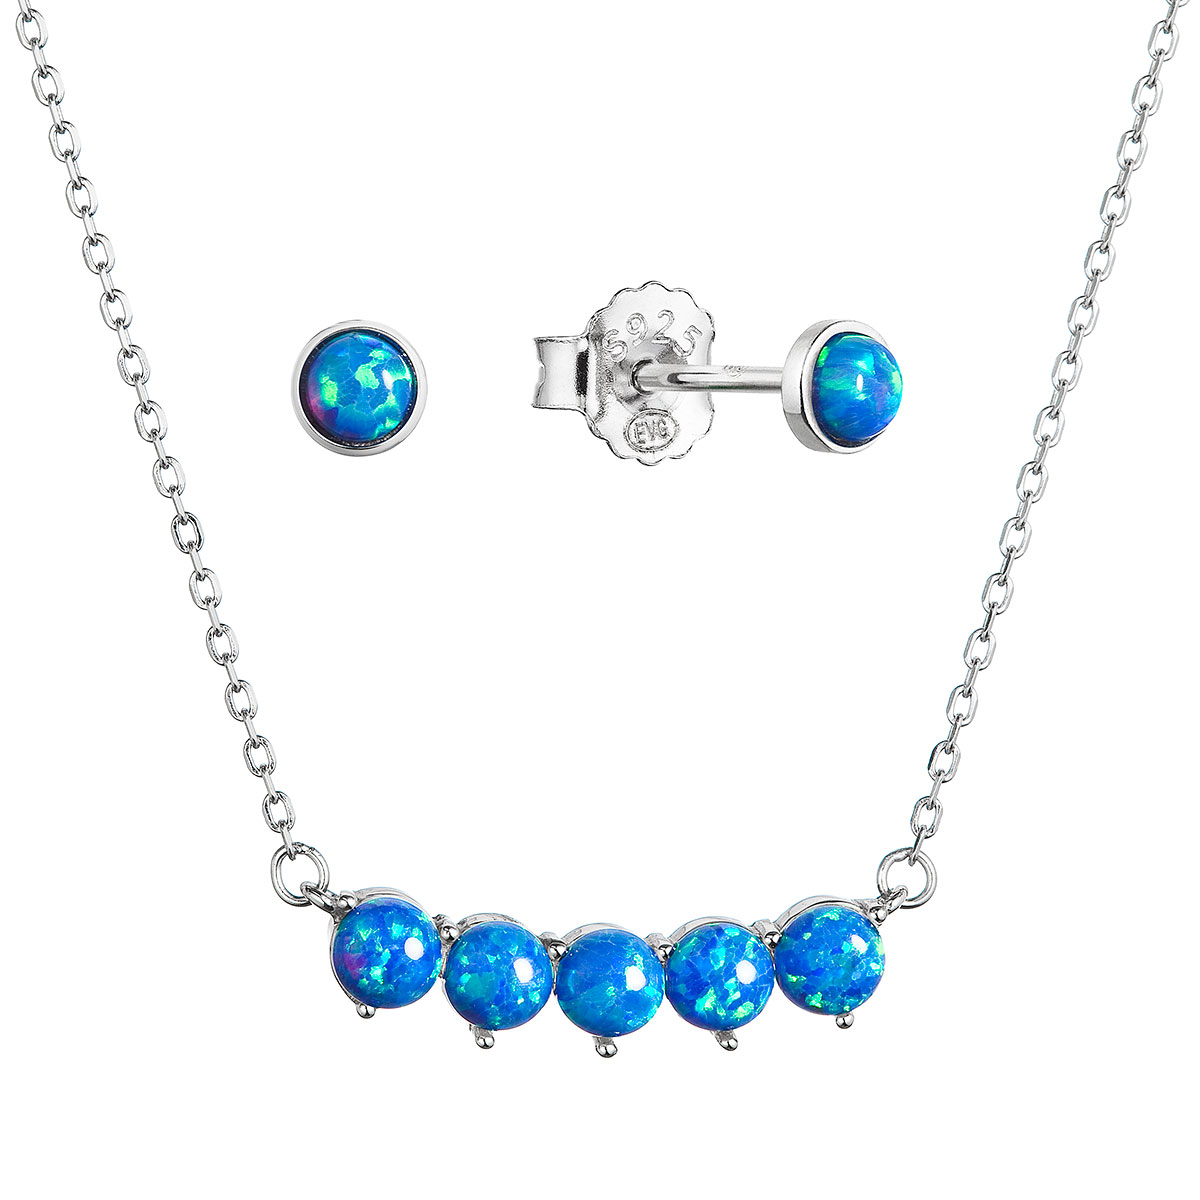 Evolution Group Sada šperků se syntetickými opály modré kulaté 19035.3 blue